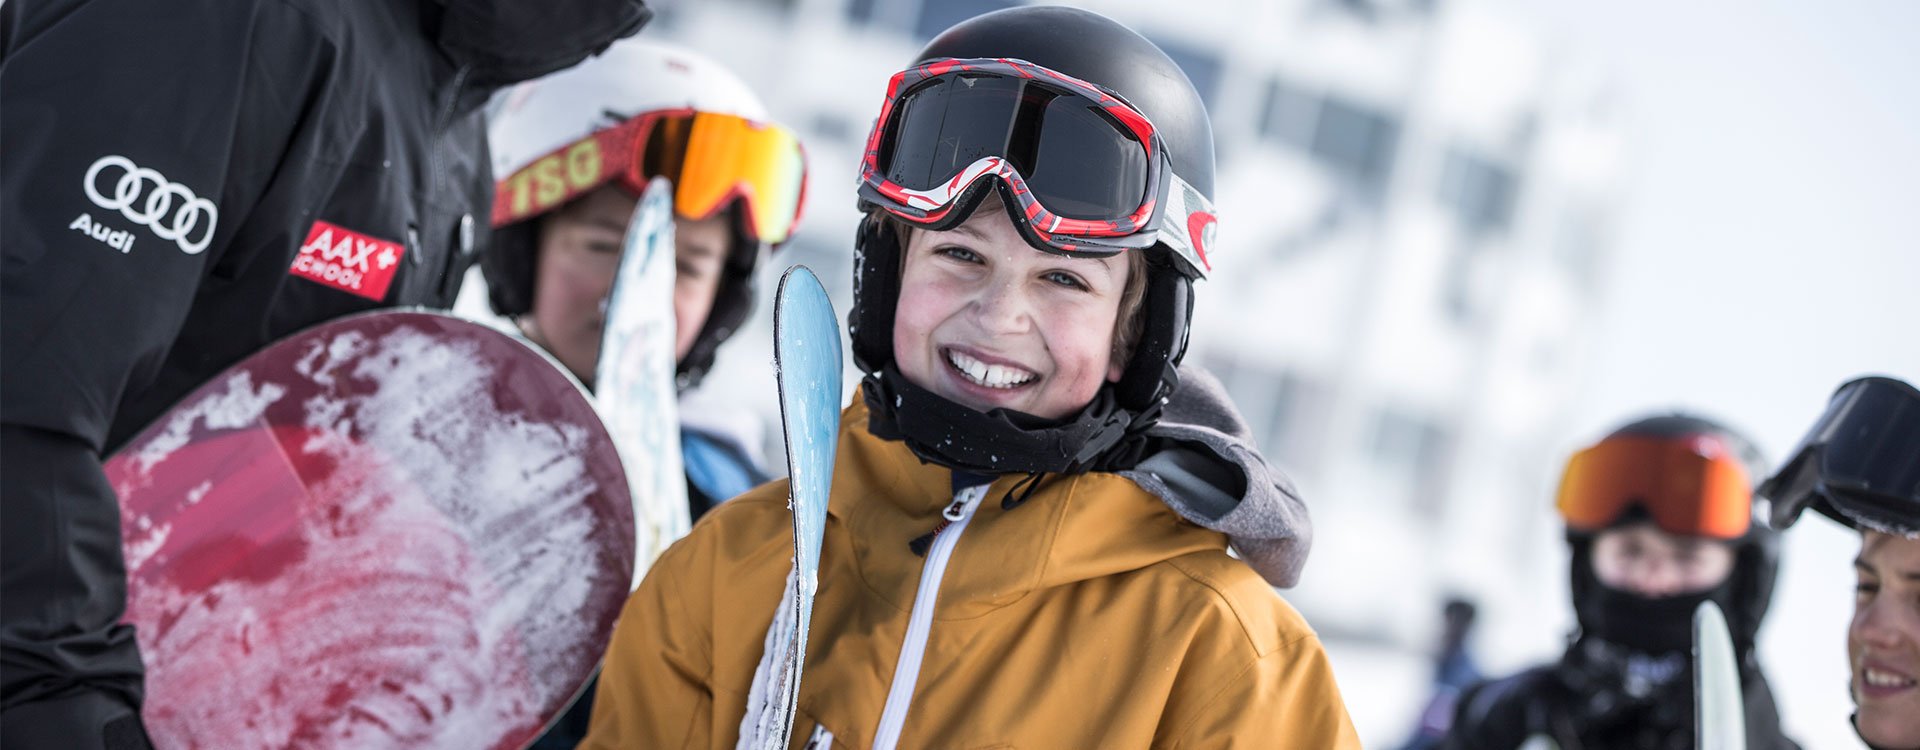 Skischule, Flims, Laax, Schweiz, Kids, Unterricht, Spass, Skigebiet, Skischool